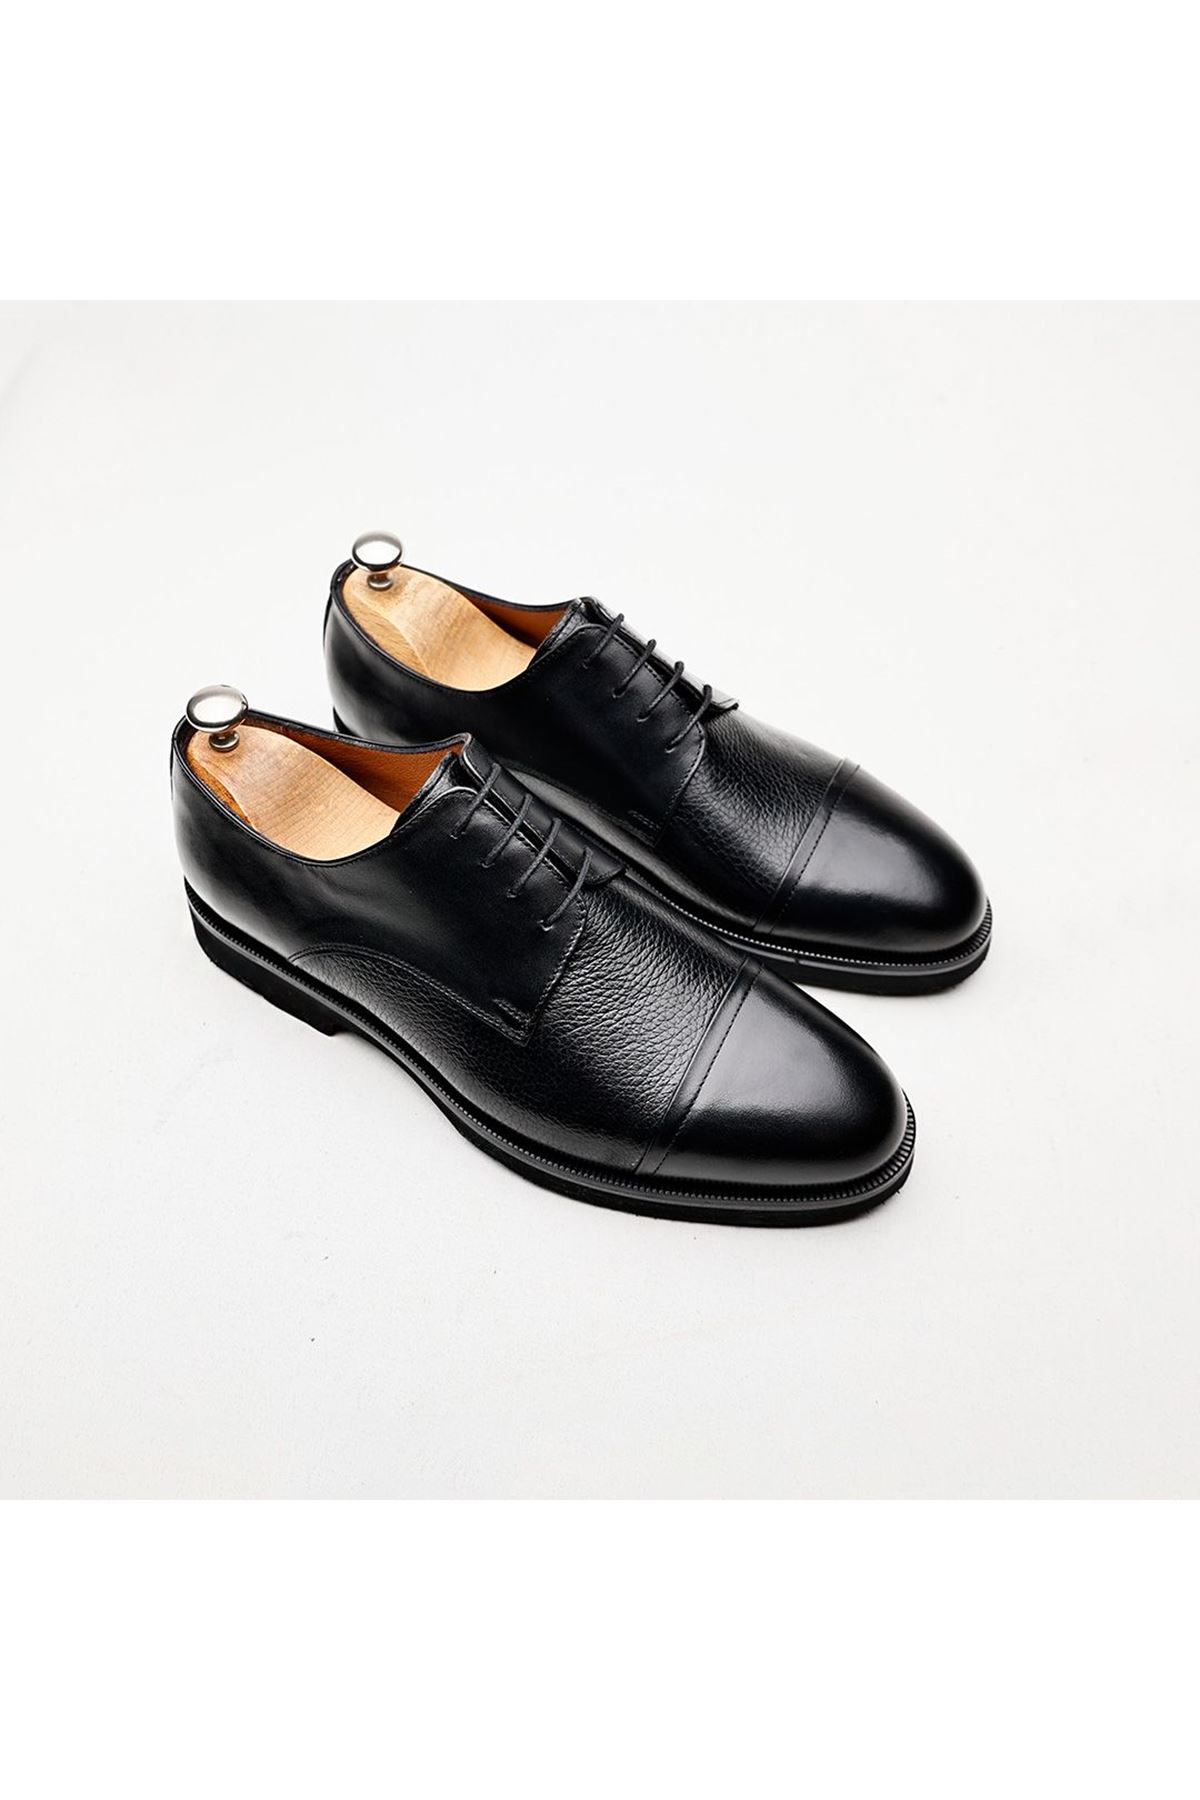 Boy Uzatan Ayakkabı Gizli Topuklu Hakiki Deri Siyah  Floter Erkek Klasik Ayakkabı MYY223